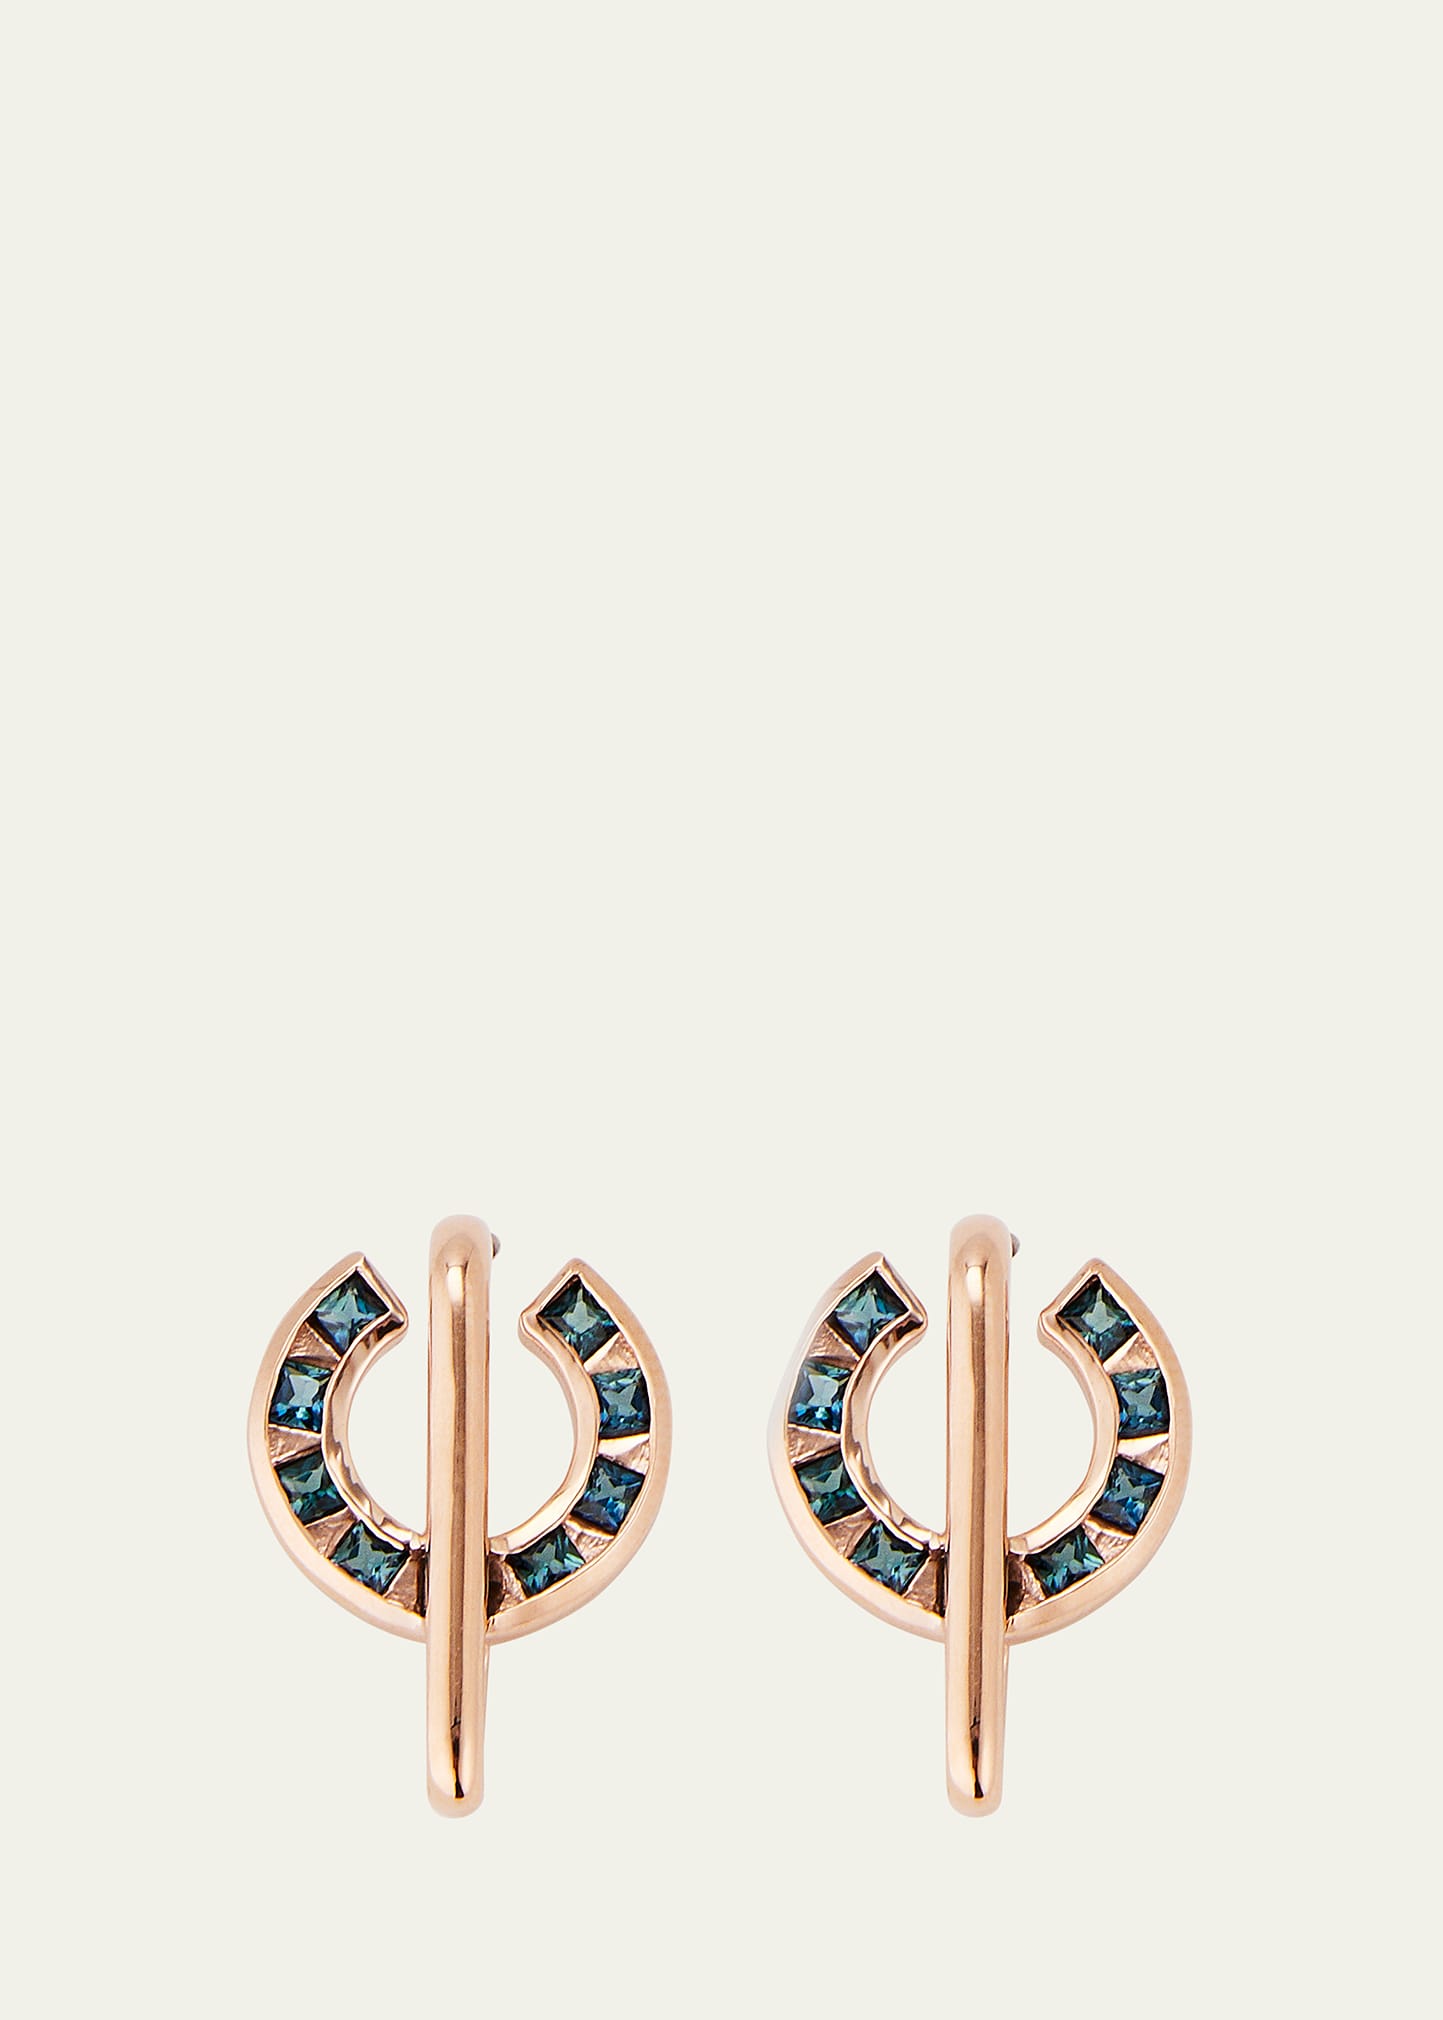 14k Rose Gold Sundial Indicolite Tourmaline Stud Earrings